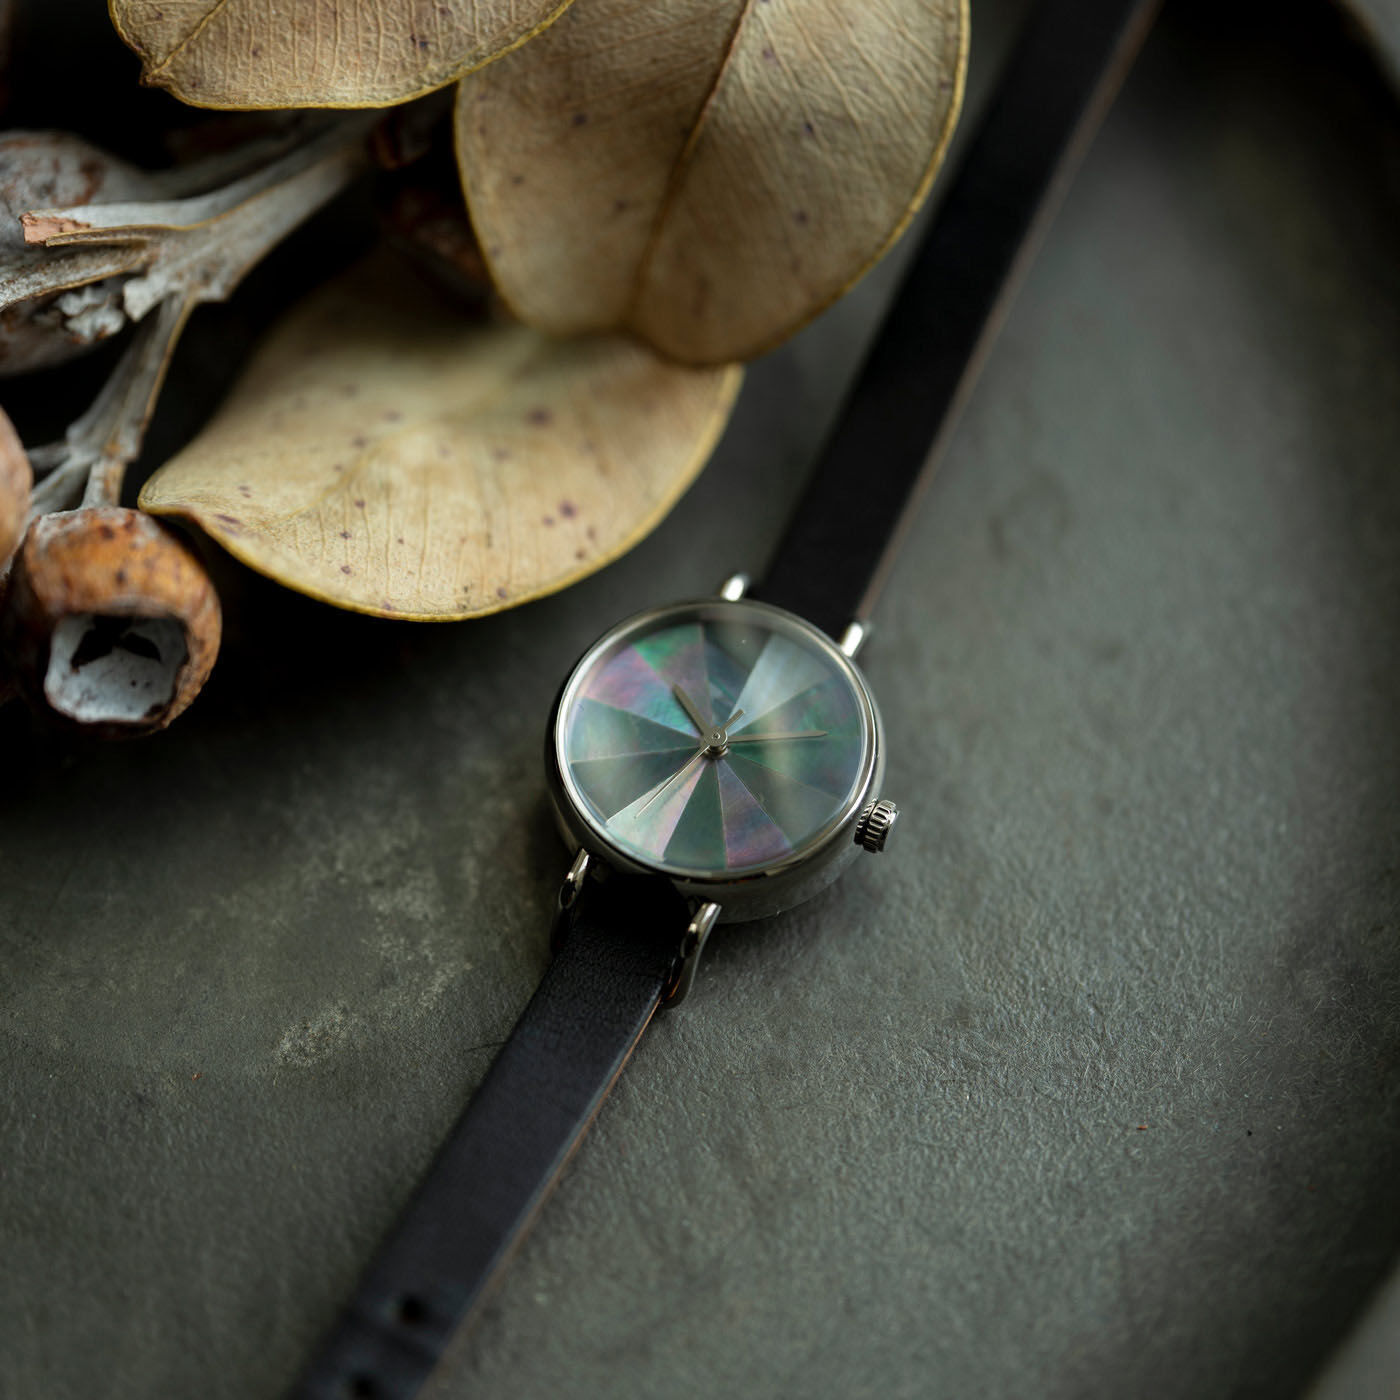 ＆Stories|金沢の時計職人が手掛けた オーロラ色の輝きに見惚れる 黒蝶貝の腕時計〈ブラック〉|金沢の時計工房のアートディレクター・牛島孝さんが、「最高にこだわった」と言う黒蝶貝の腕時計。